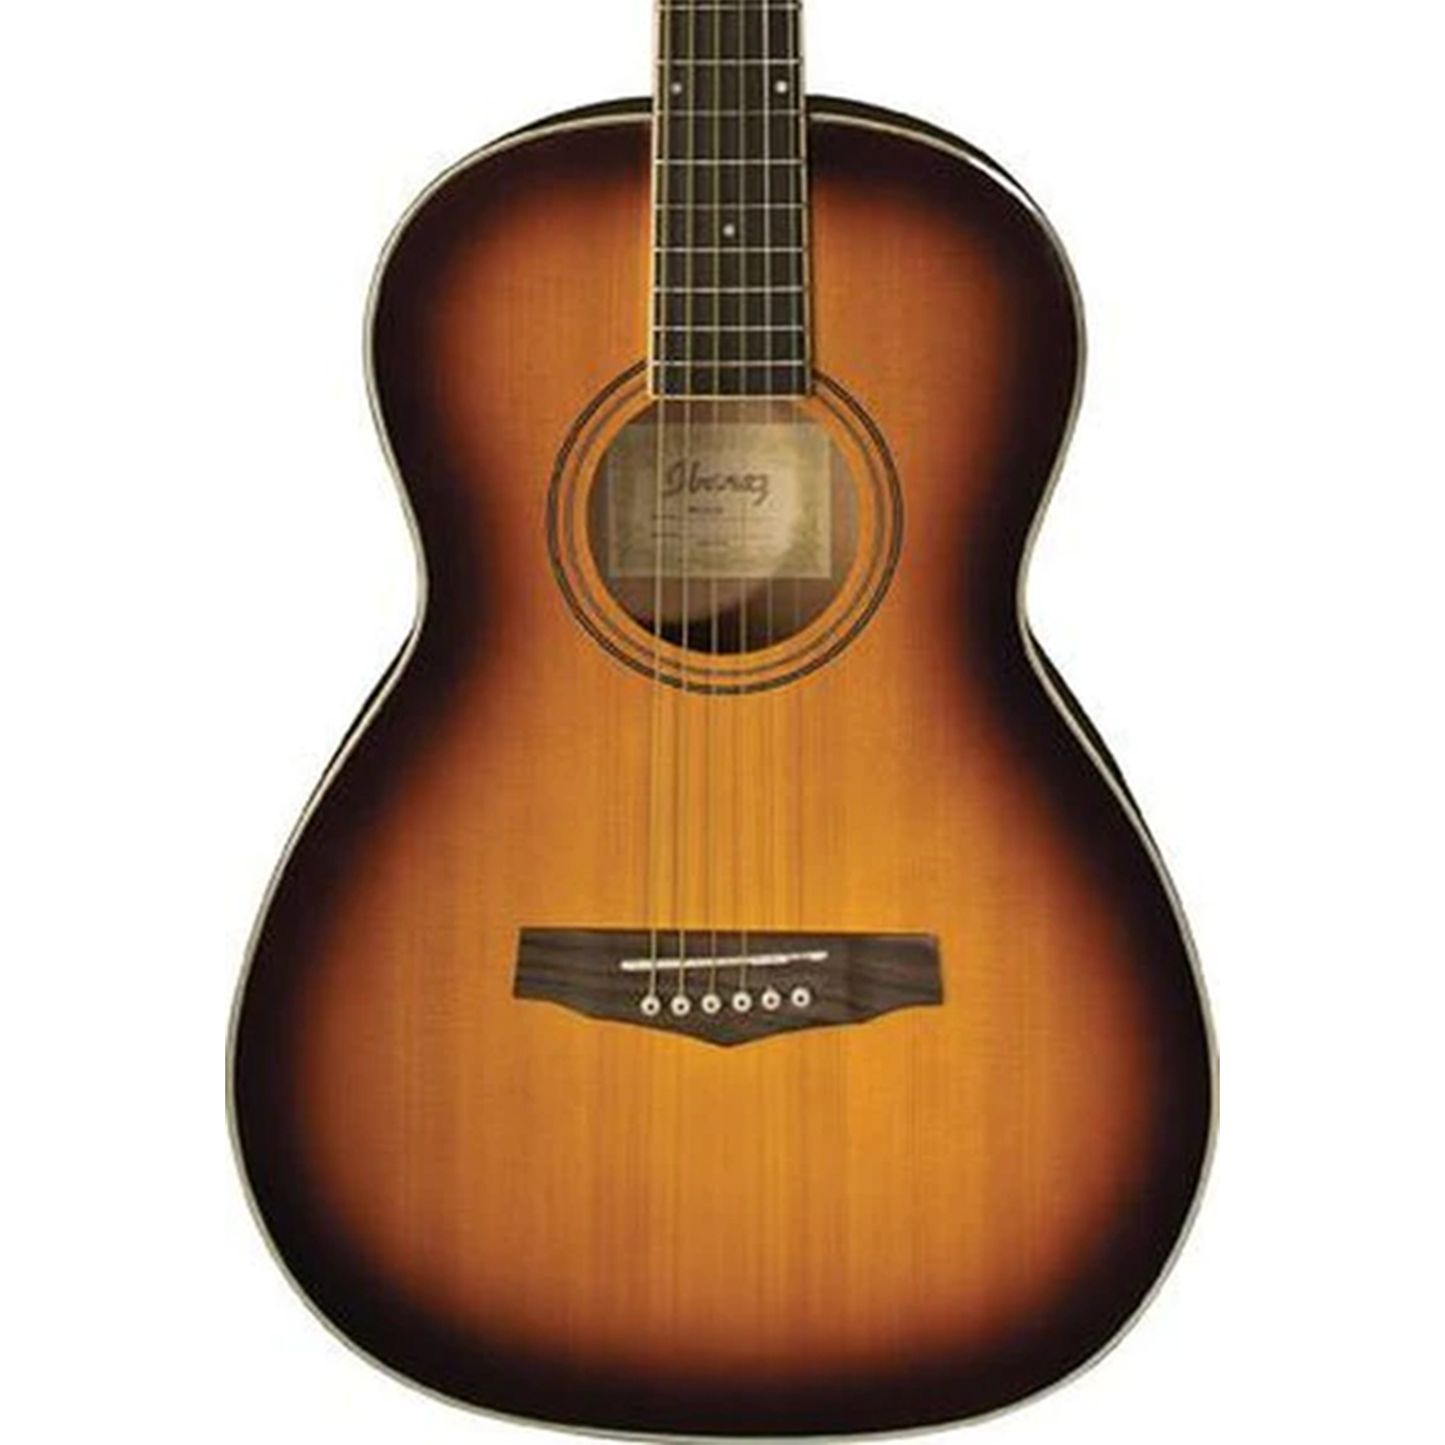 Ibanez PN15 Parlor Size Acoustic Guitar - Brown Sunburst